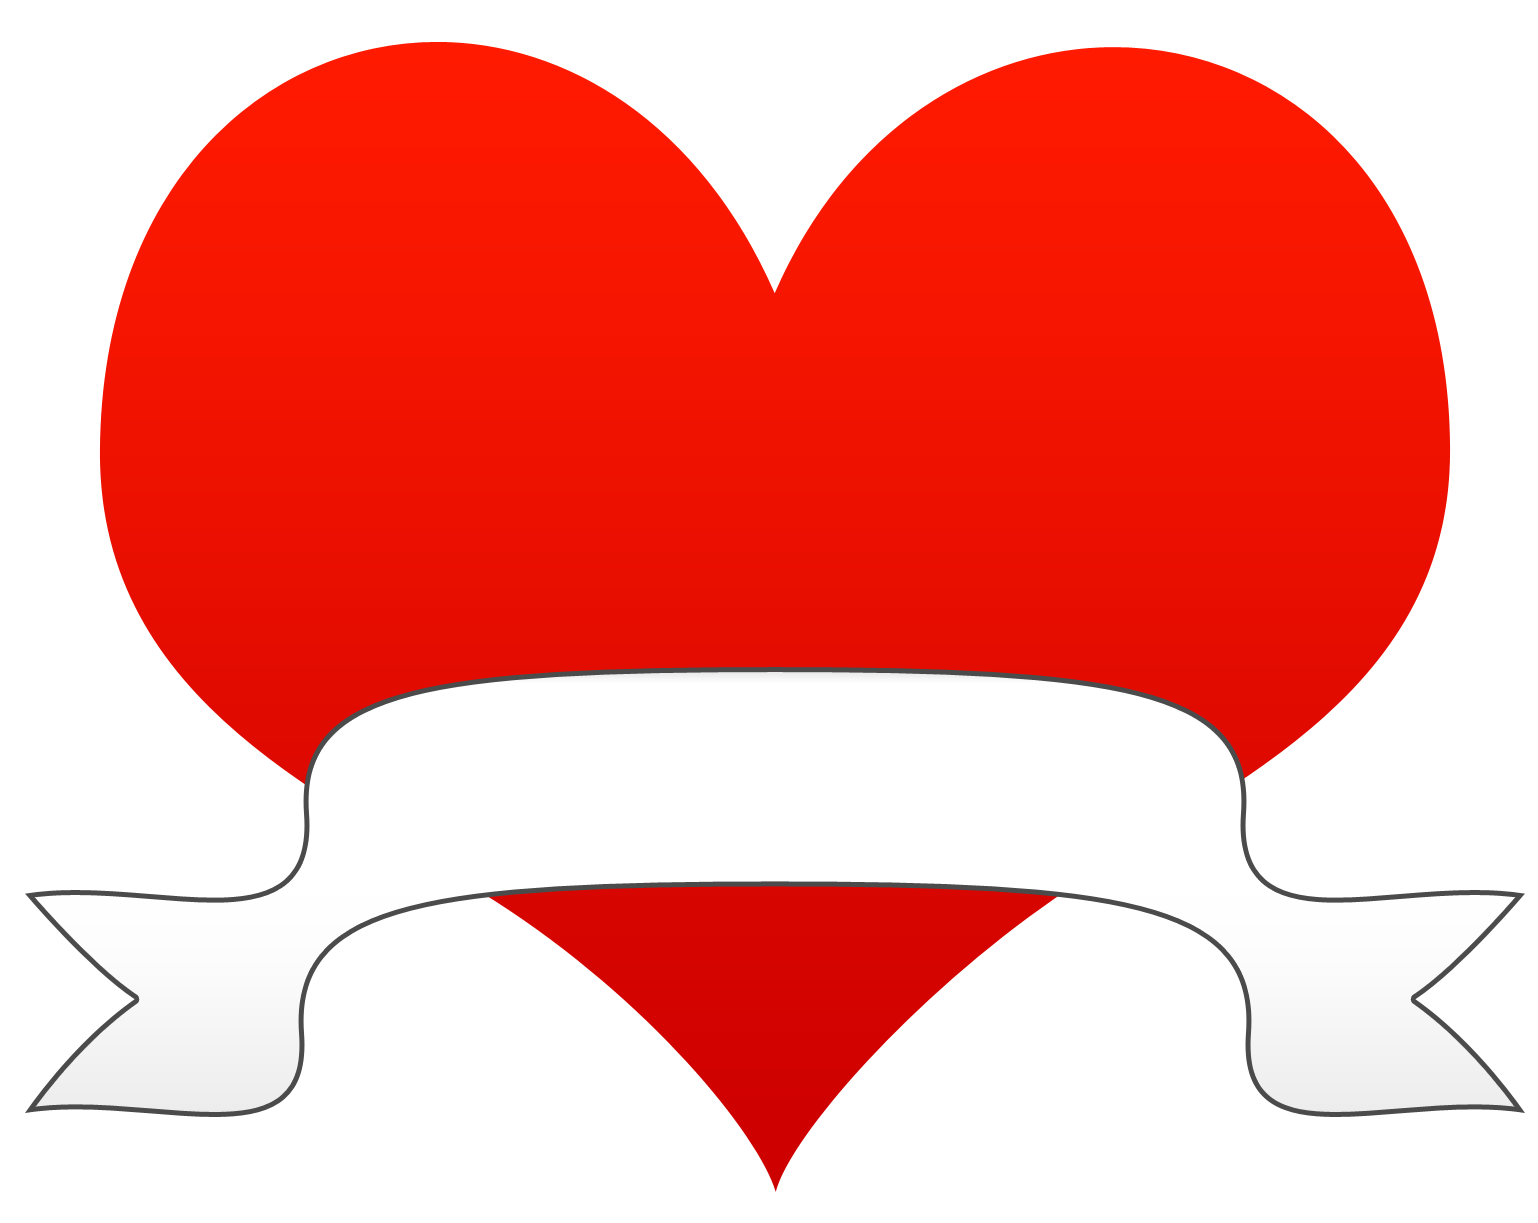 Hearts heart clip art heart images clipartix - Cliparting.com